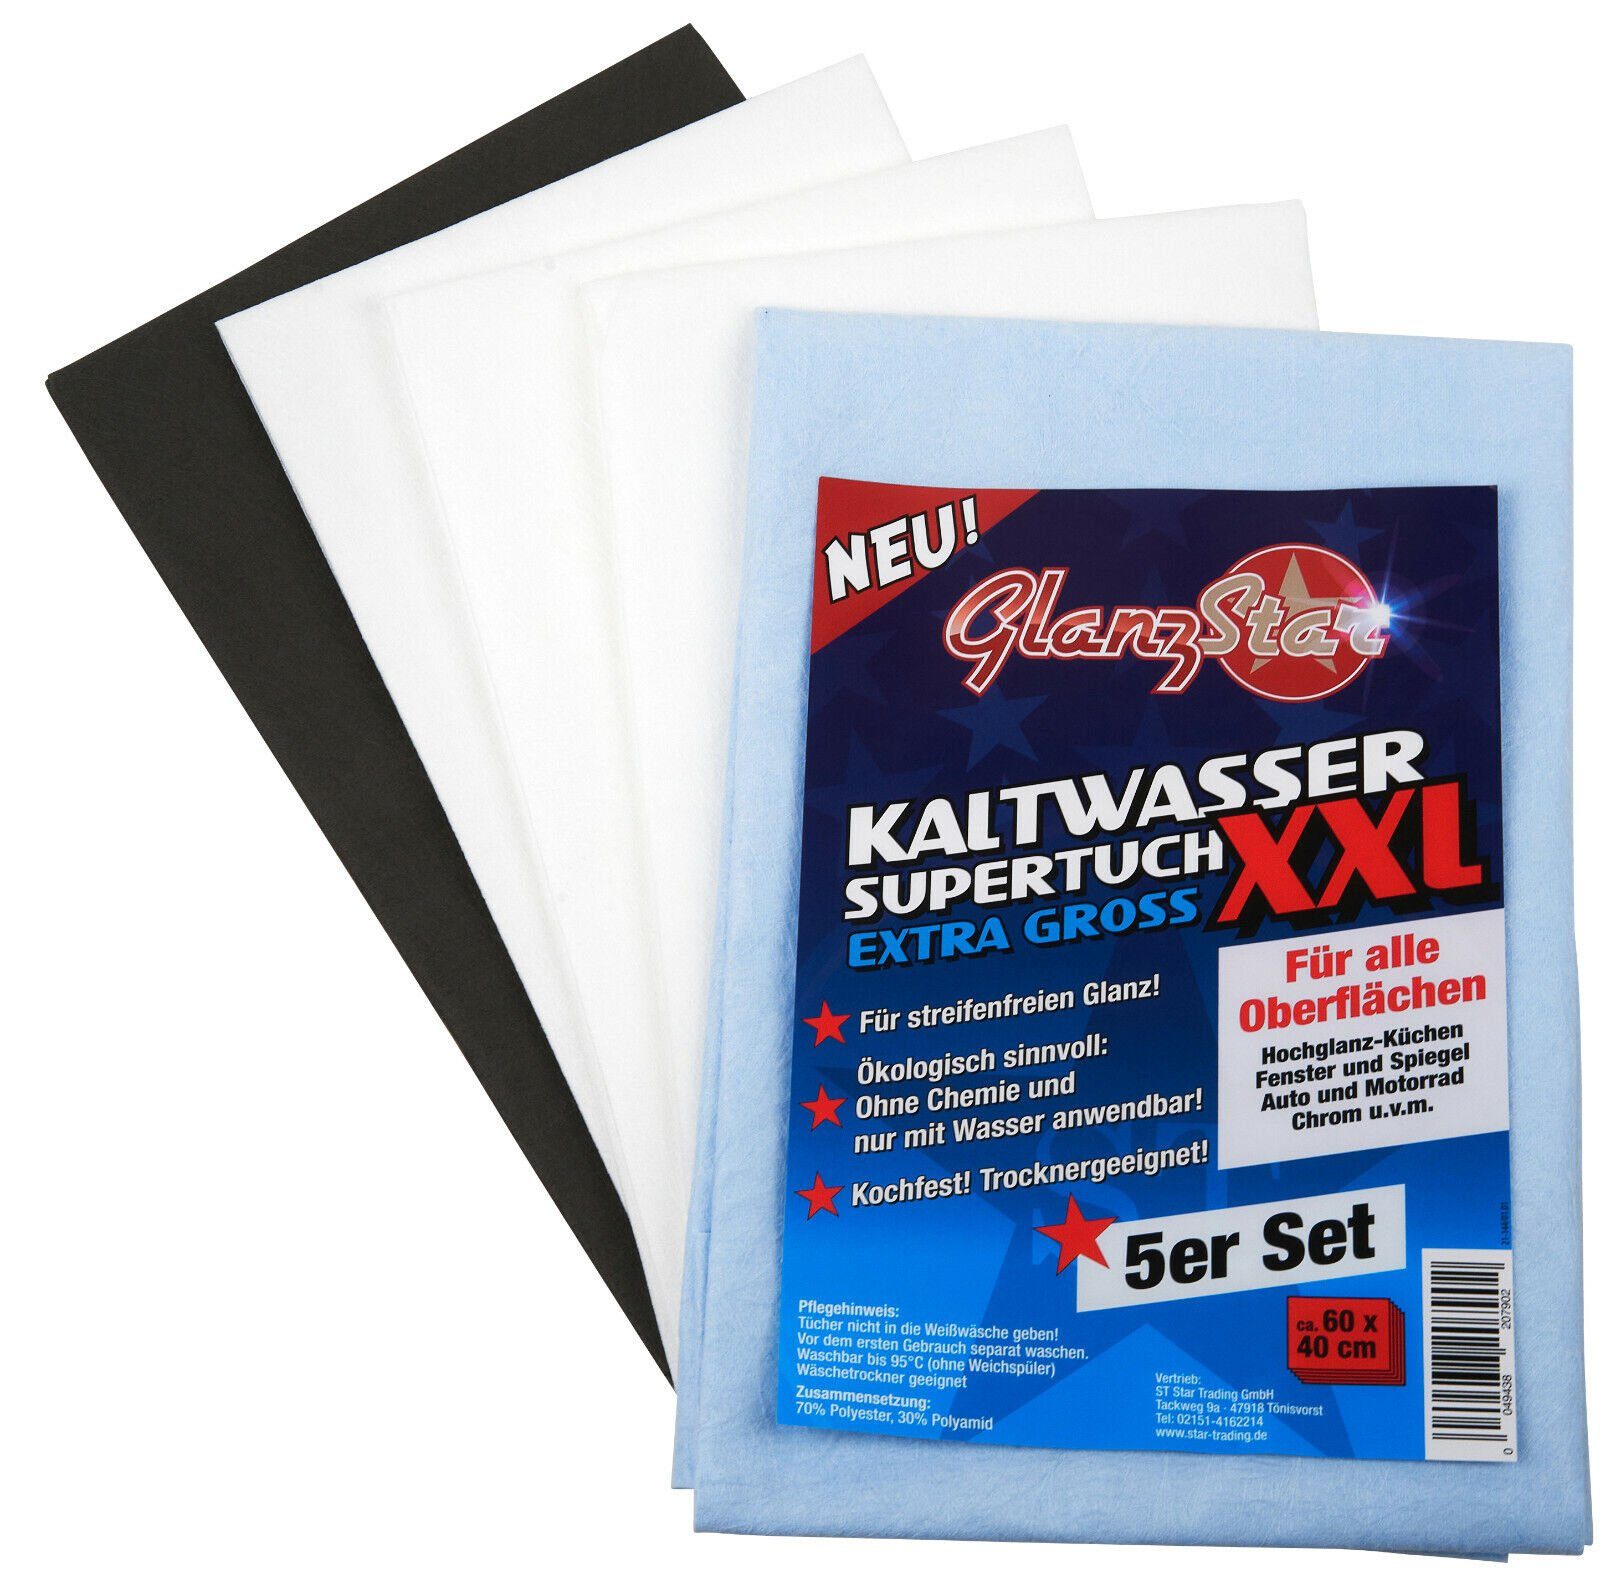 Glanzstar Kaltwasser Supertuch 5er Set XXL-60x40cm- Mikrofasertuch (70% Polyester 30% Polyamid)